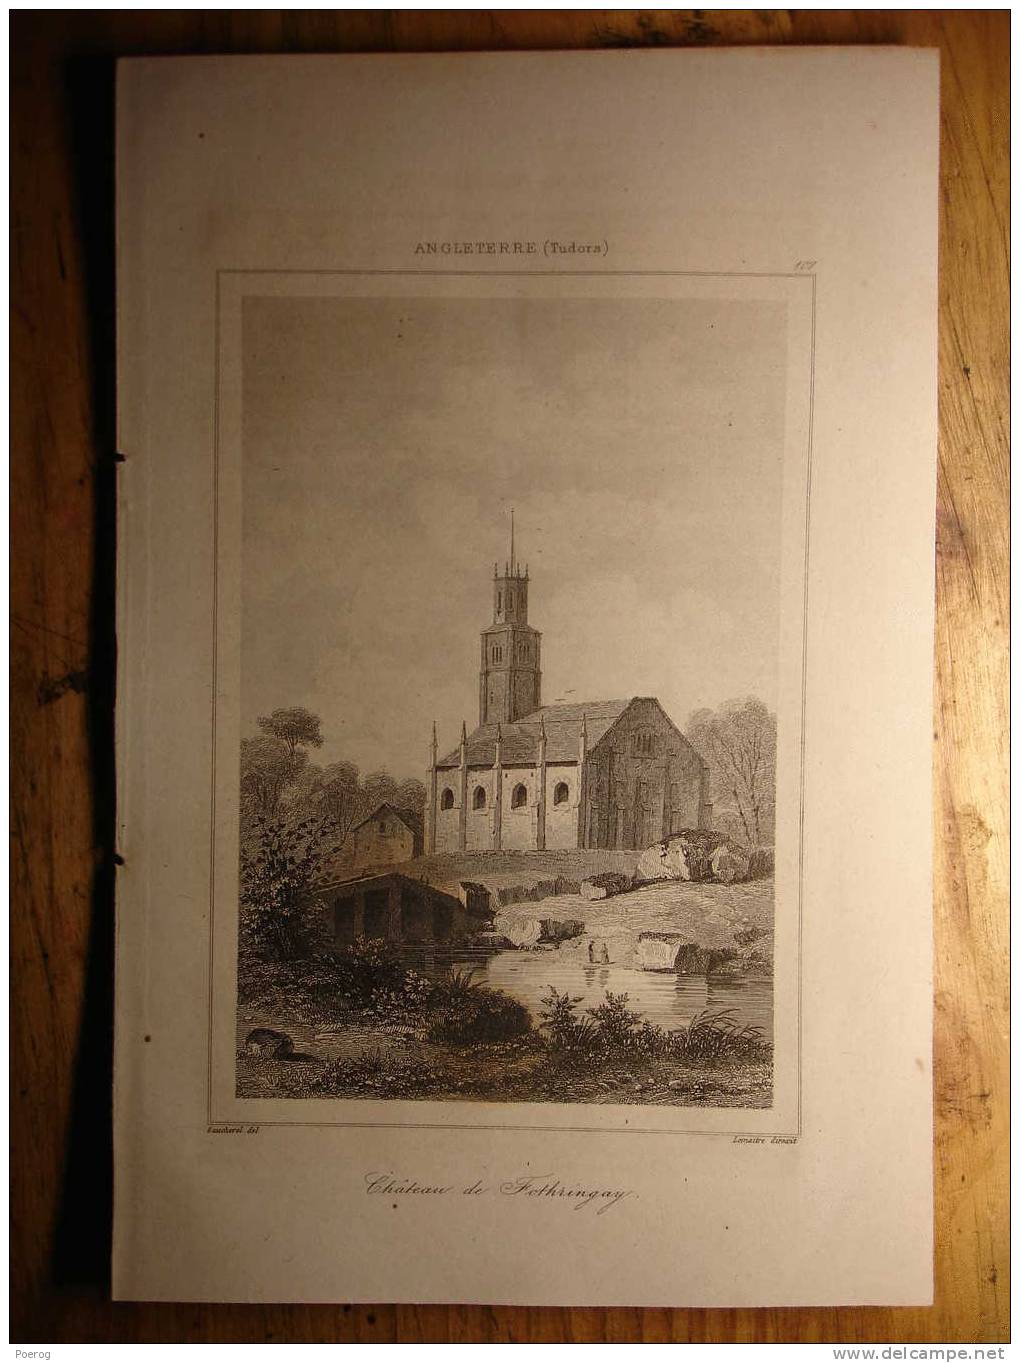 GRAVURE De 1842 - ANGLETERRE (TUDORS) - CHATEAU DE FOTHRINGAY - CASTLE ENGLAND 1842 PRINT - Collections